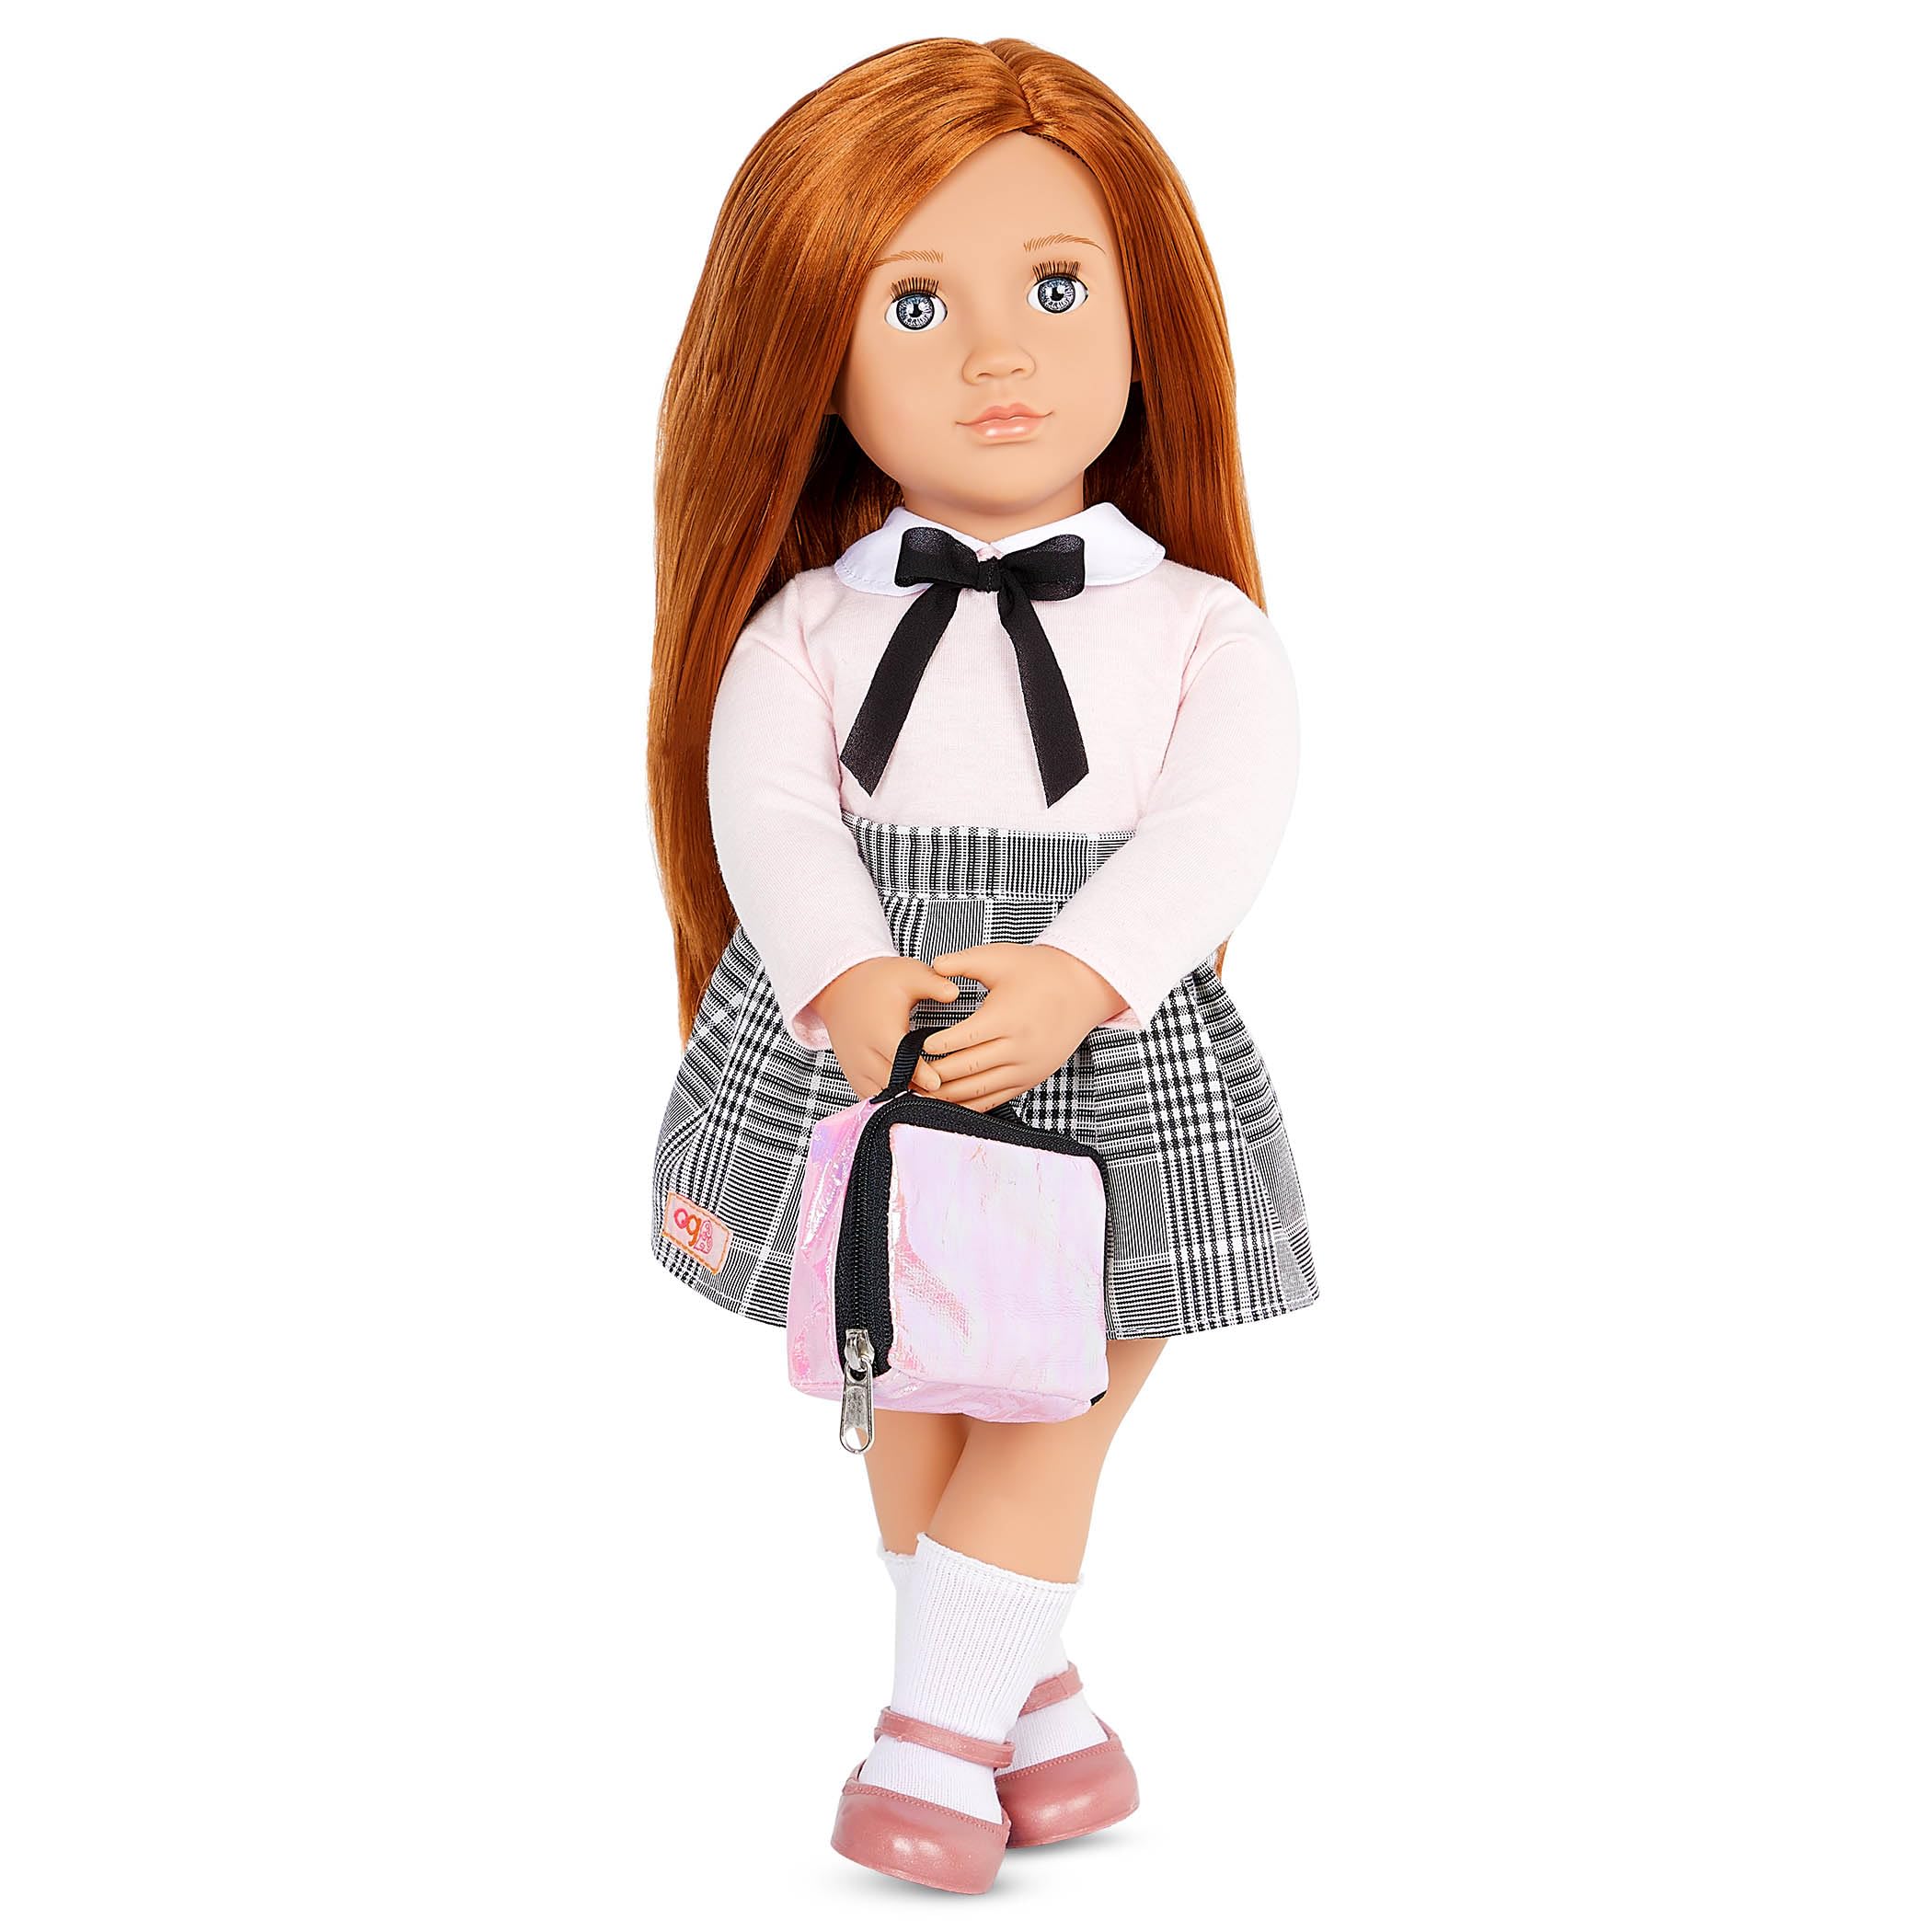 Our Generation Schülerin Puppe Carly - Bewegliche 46 cm Puppe mit Kleidung und Zubehör - rosa Pullover, Rock und Kniestrümpfe- Spielzeug ab 3 Jahren